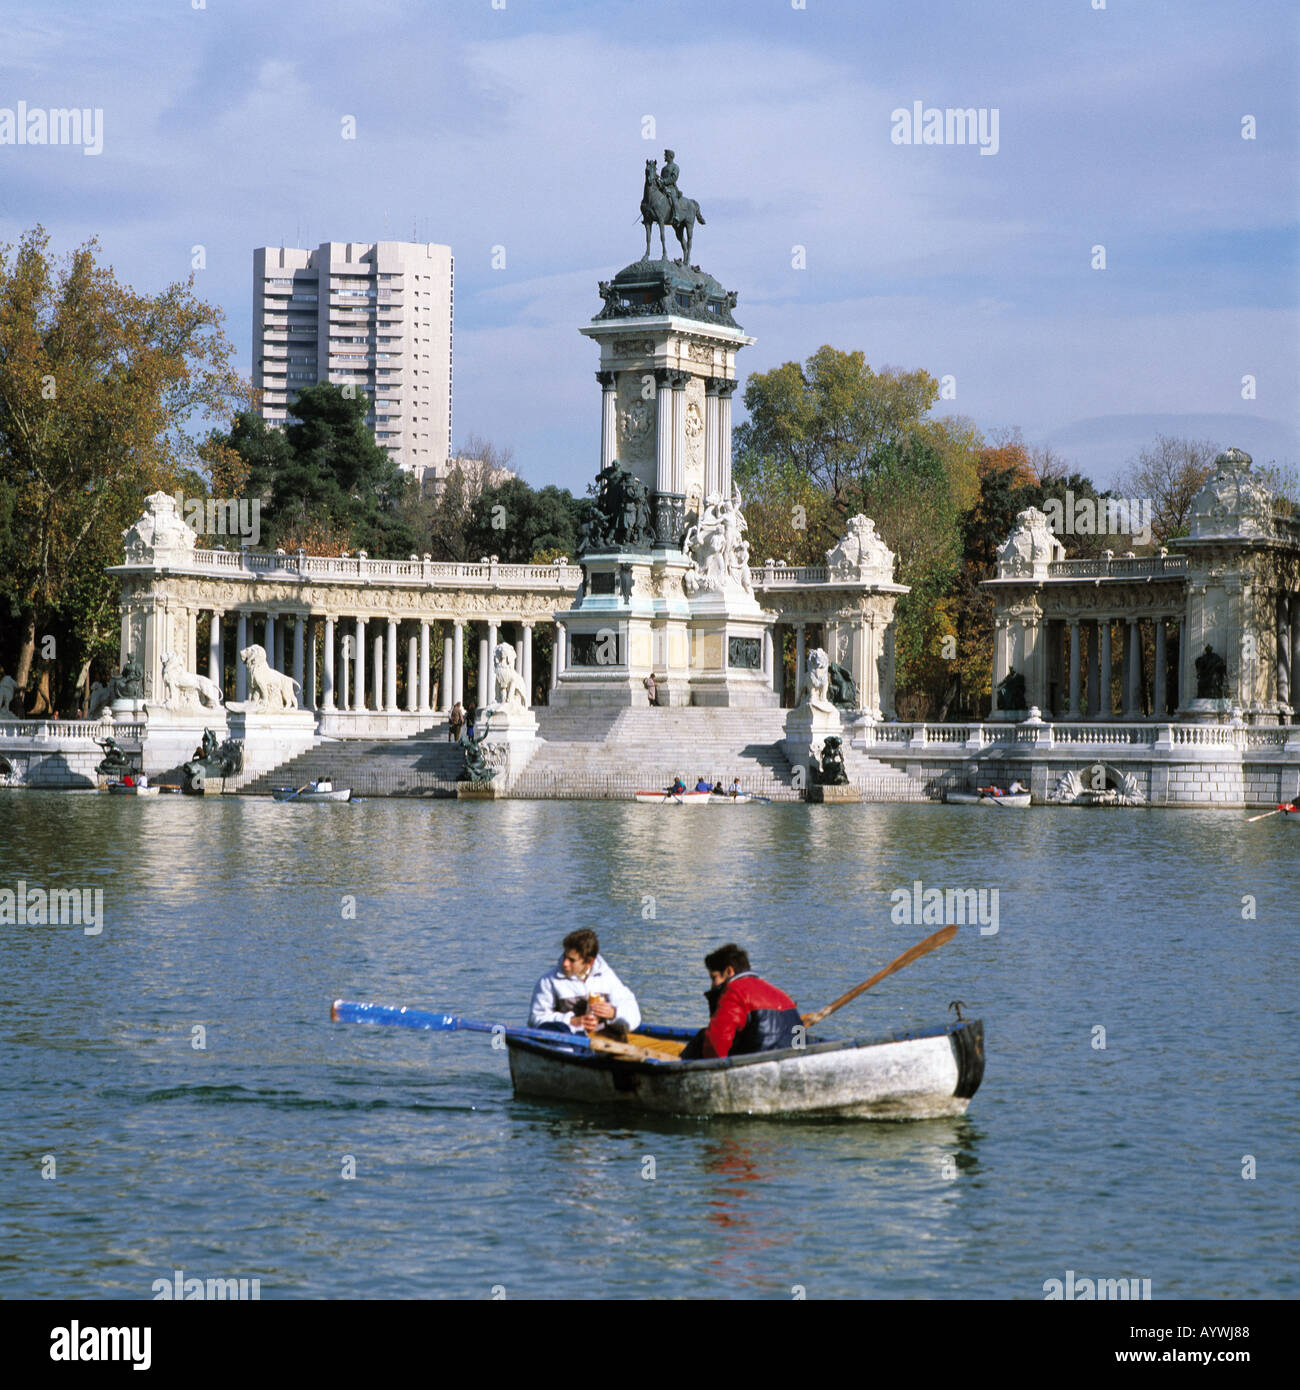 Parque del Retiro, Retiro-Park, Denkmal Koenig Alfons XII, Teich mit Ruderboot, zwei Jungen in einem Ruderboot, Hochhaus, herbstlich, Madrid Stock Photo